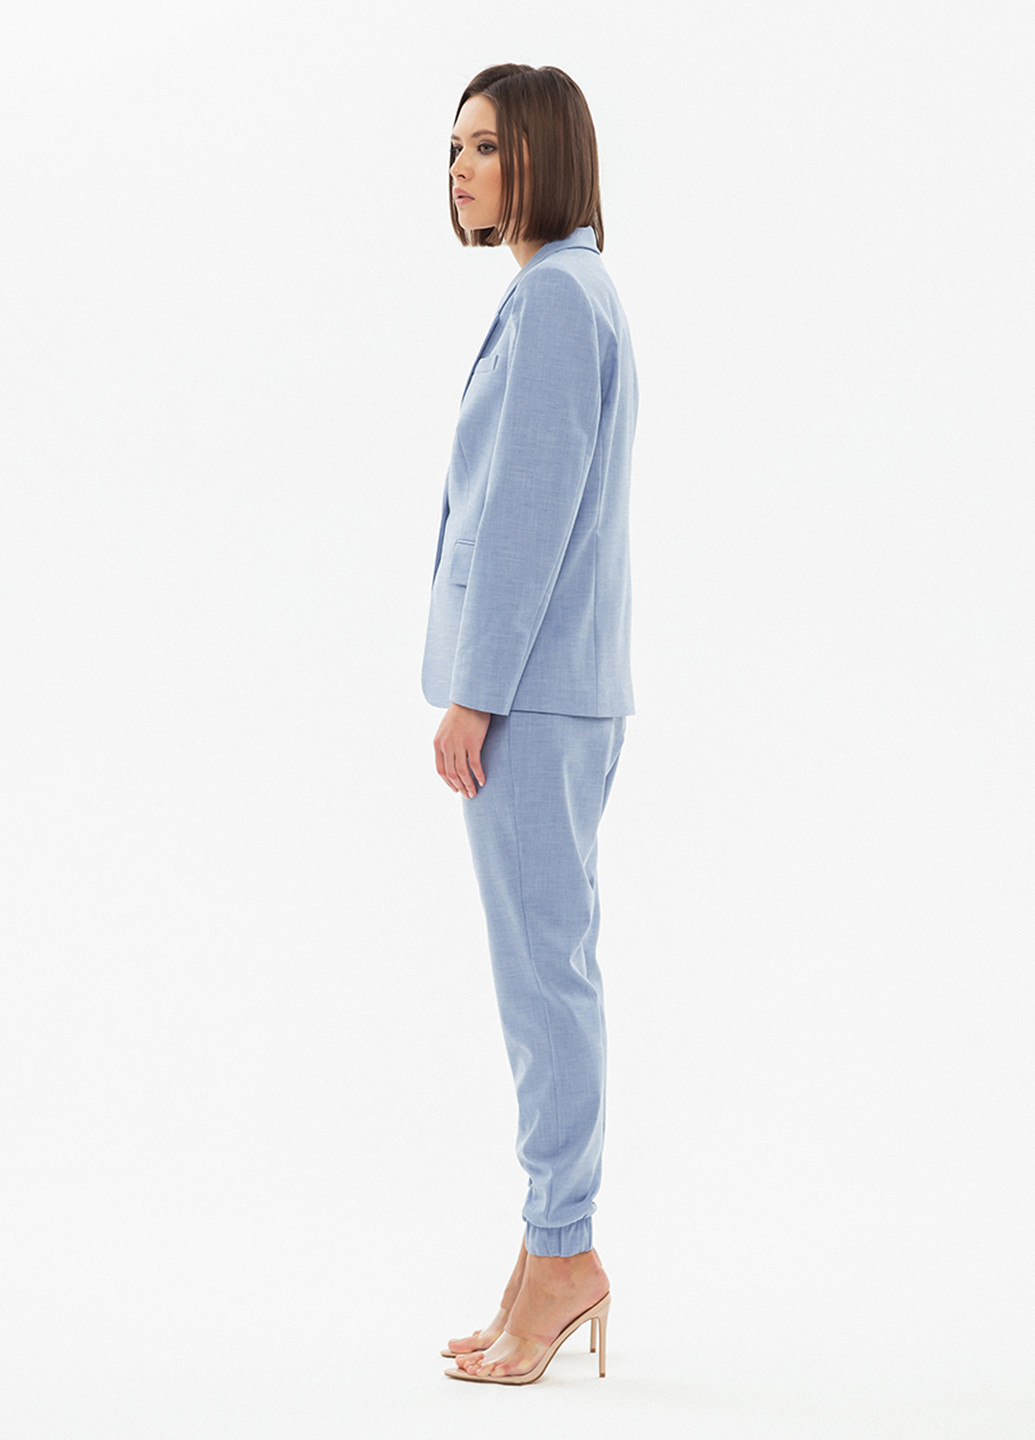 Костюм (жакет, брюки) BGL Комплект (блейзер и брюки) брючний однотонний блакитний діловий костюмна, бавовна